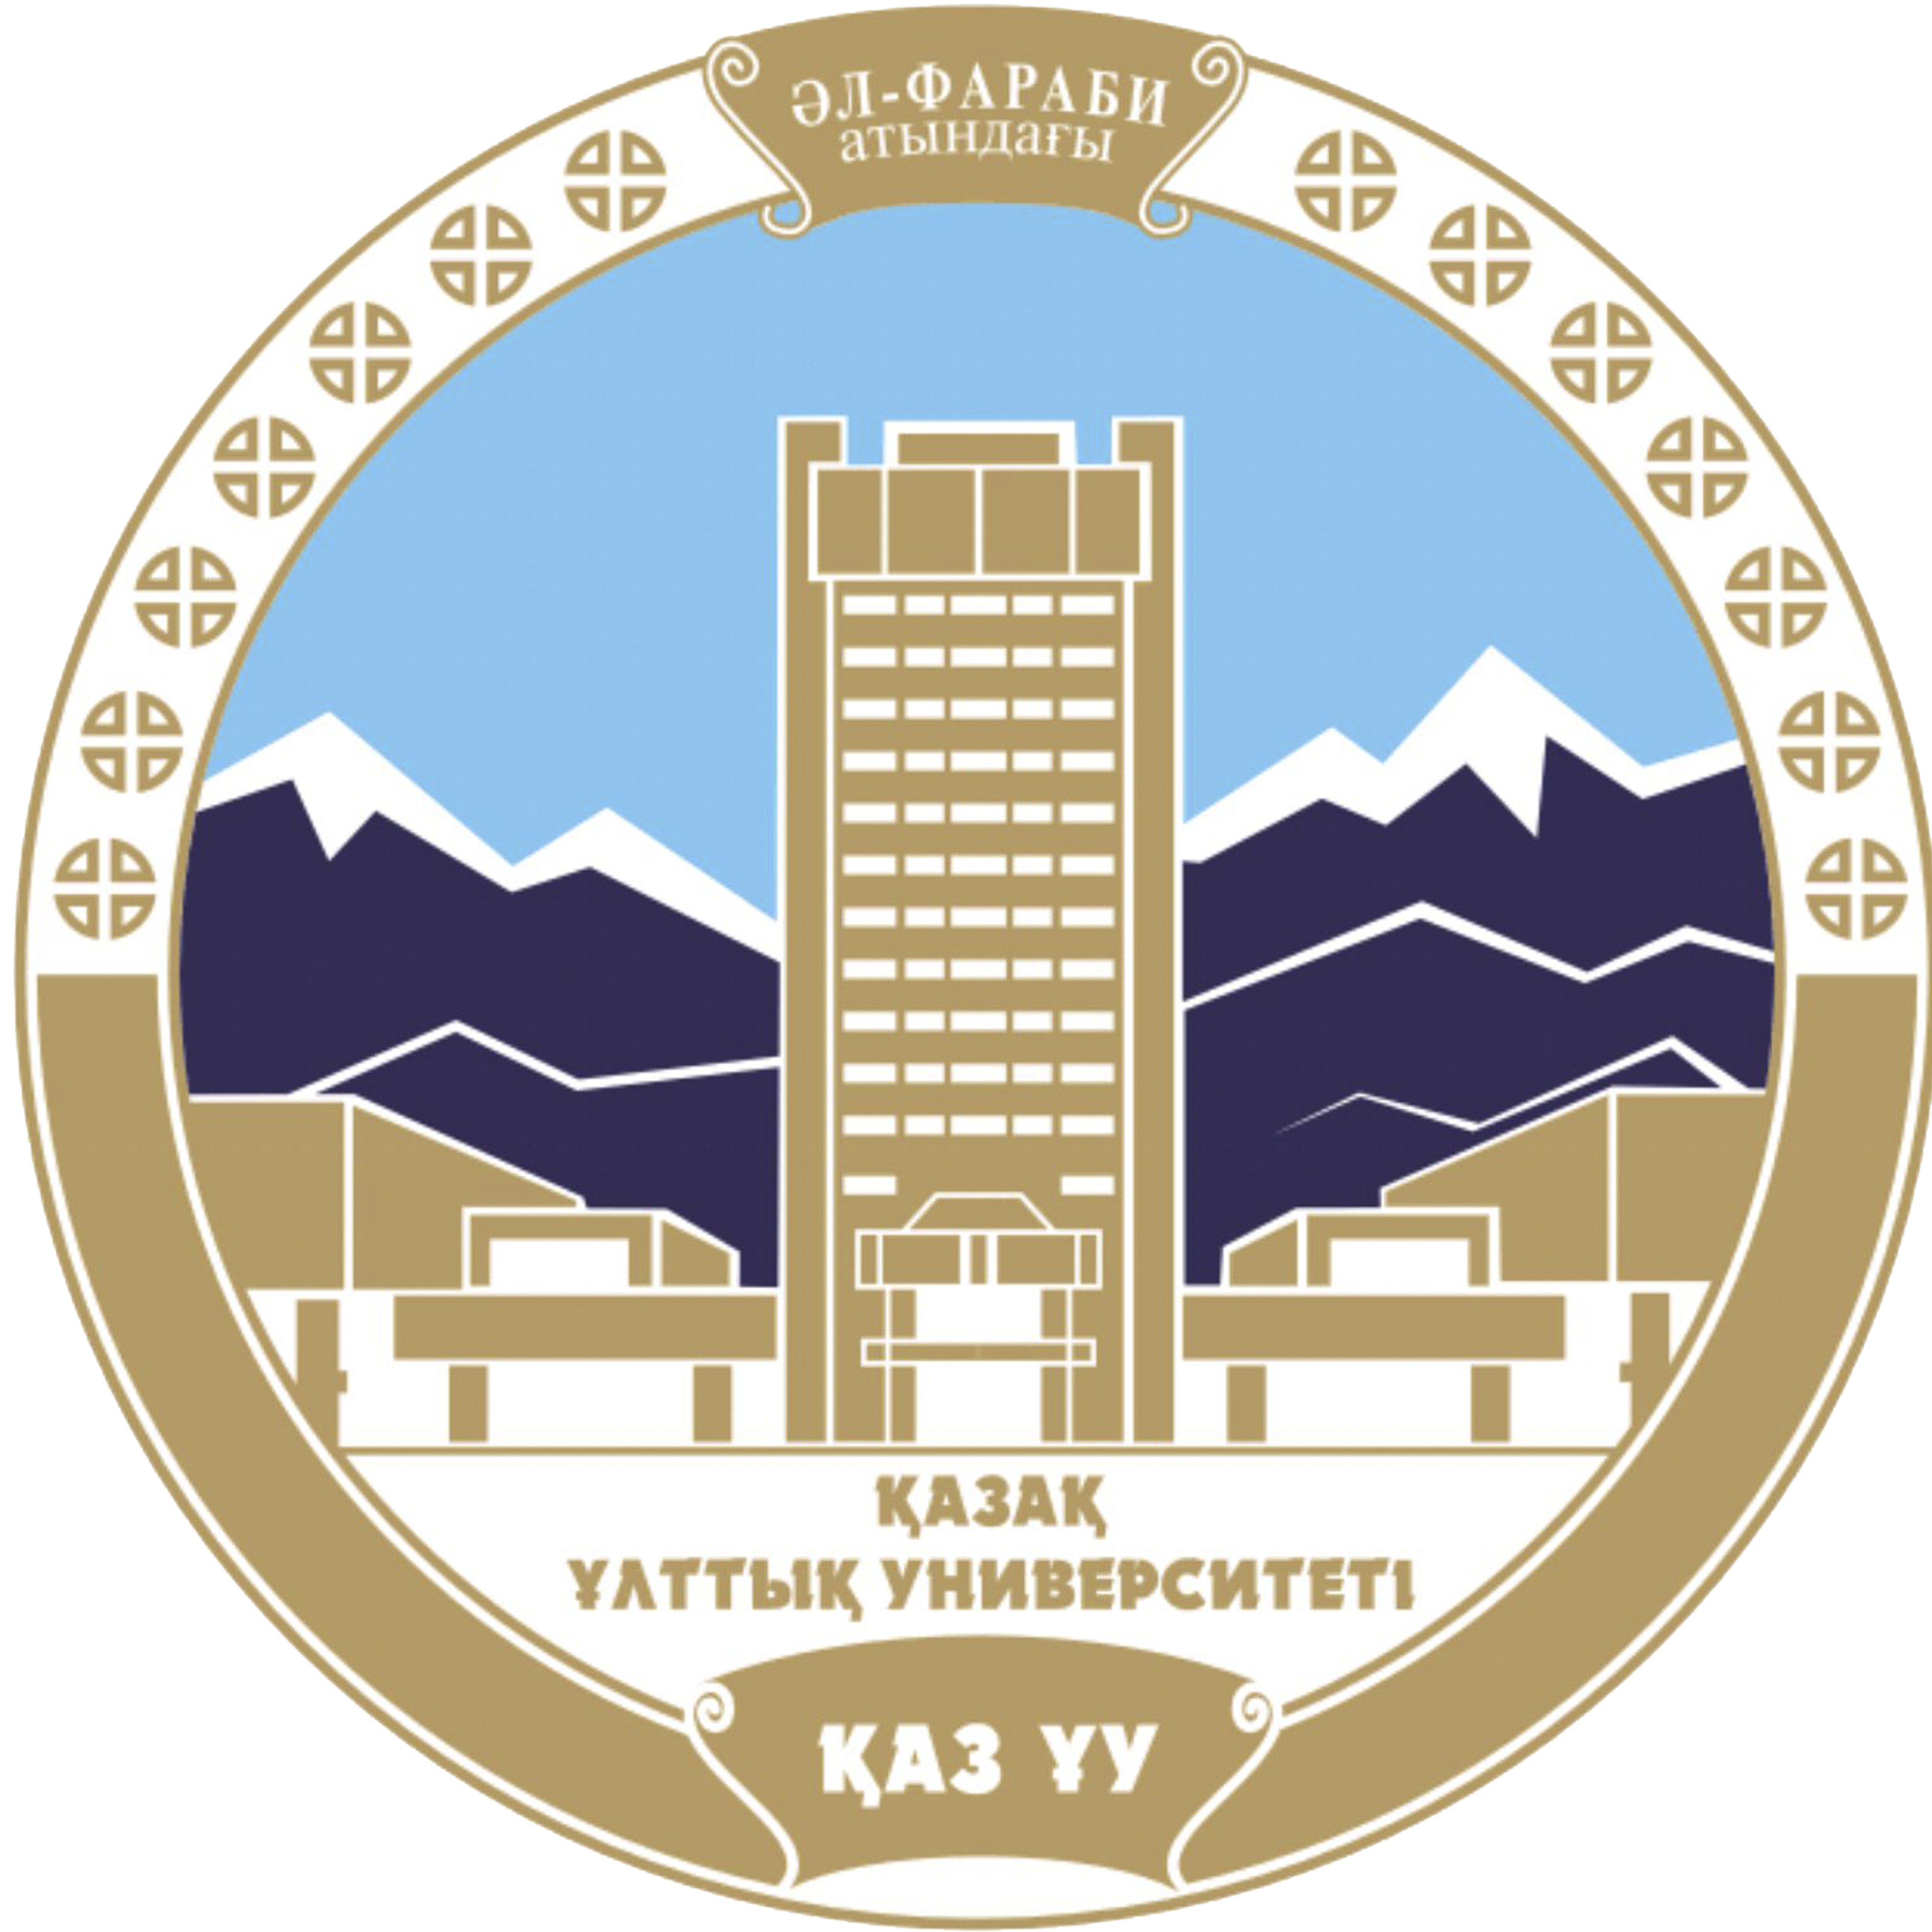 kokanduni.uz - Kokand University Andijan branch